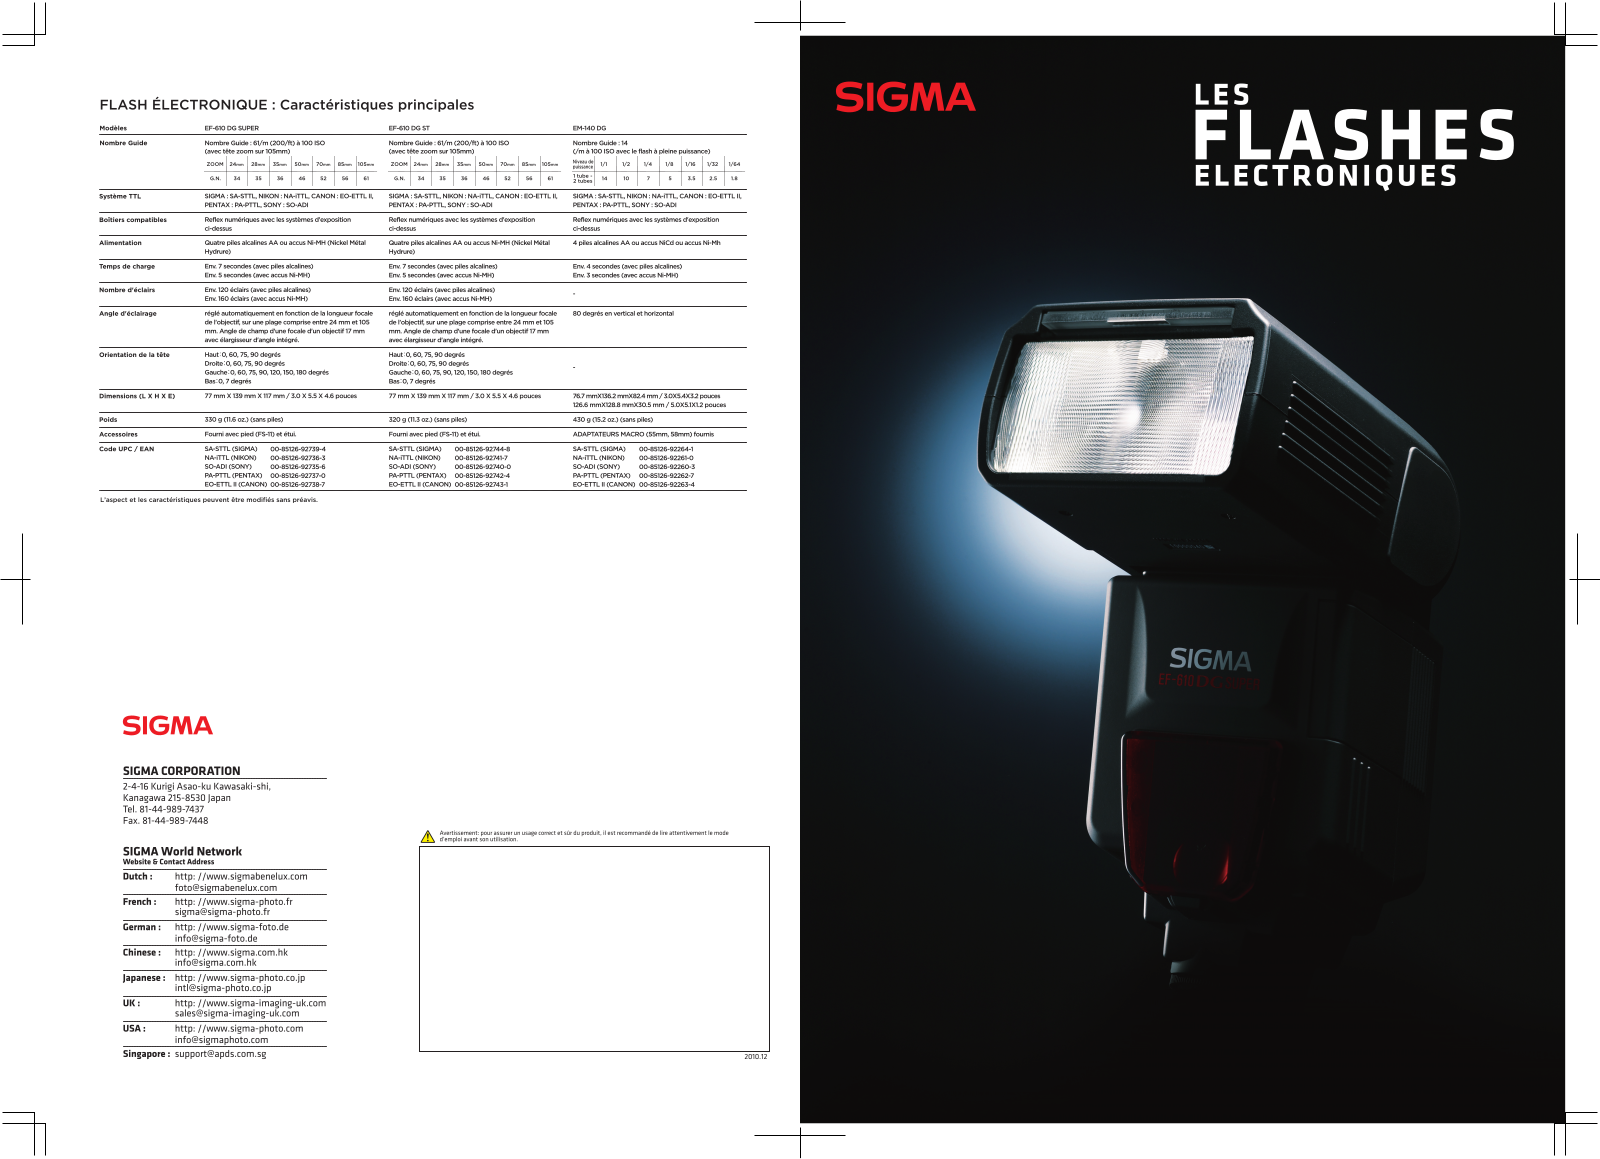 SIGMA EF-610 DG ST, EF-610 DG SUPER User Manual